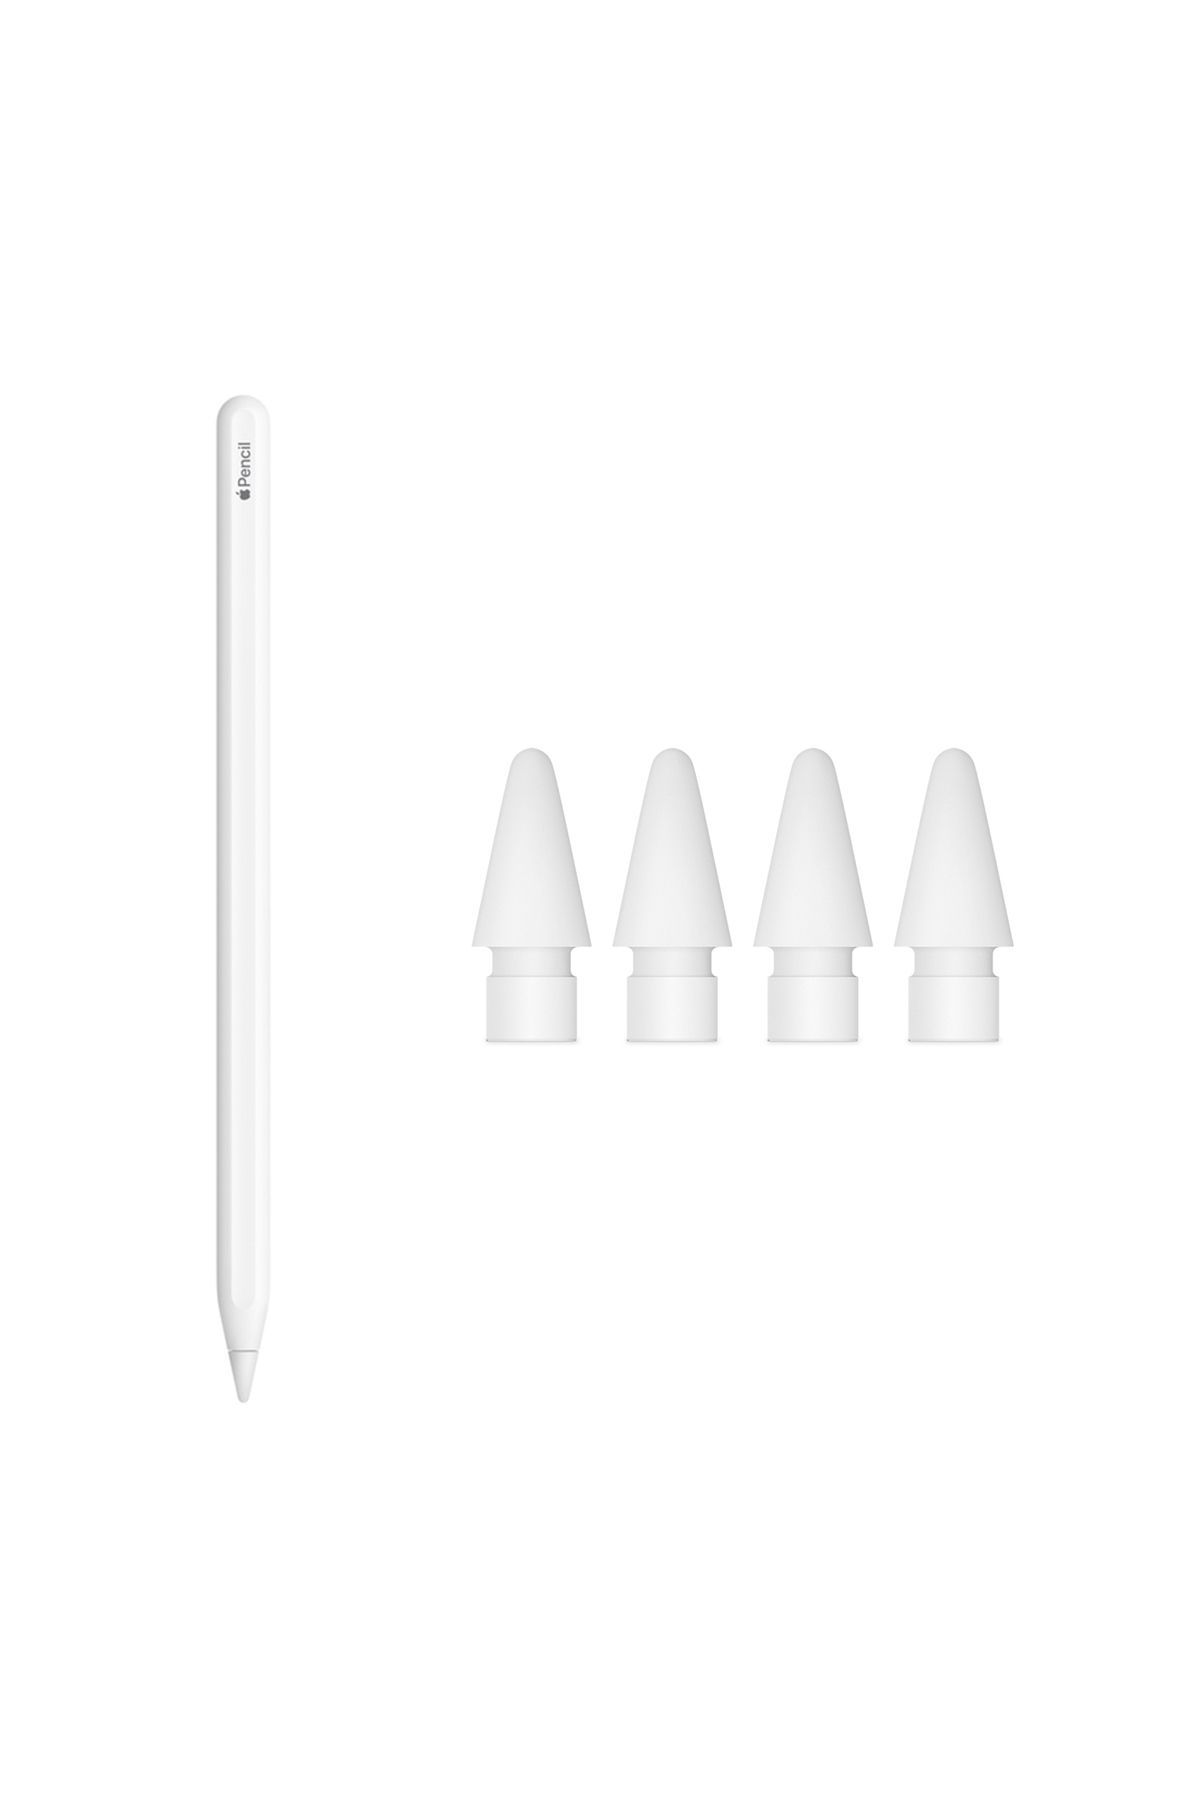 Apple Pencil 2. nesil MU8F2TU/A ve 4'lü paket Pencil Uçları (Apple Türkiye Garantili)